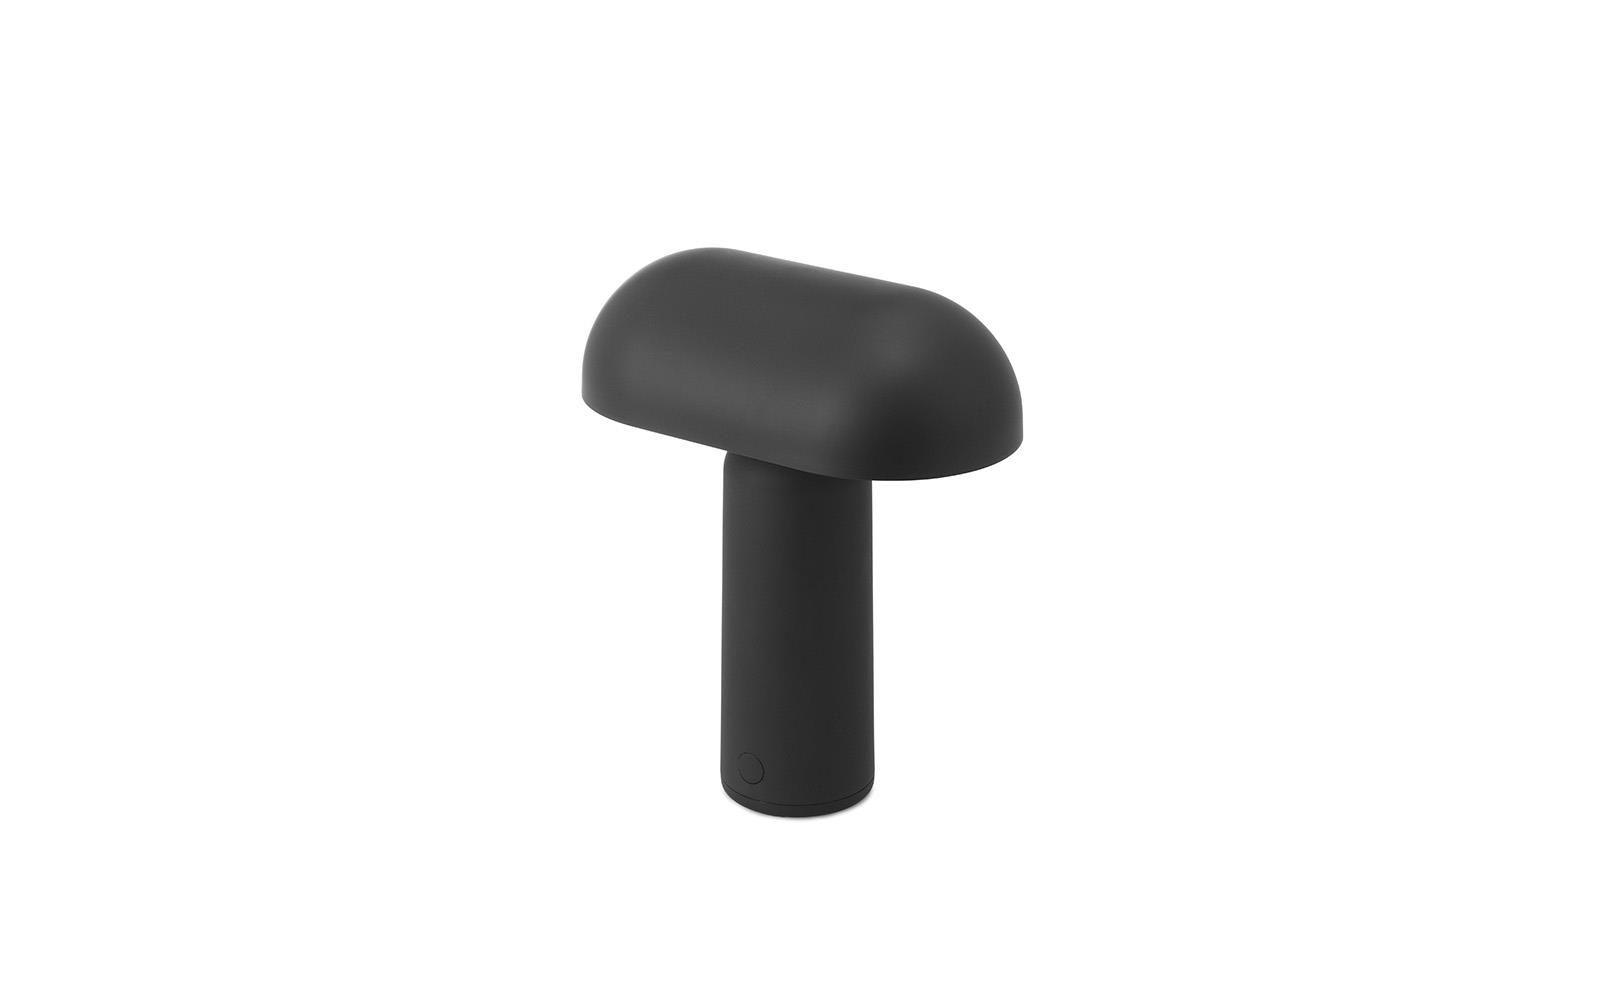 Porta - czarna lamka biurkowa w kształcie grzybka